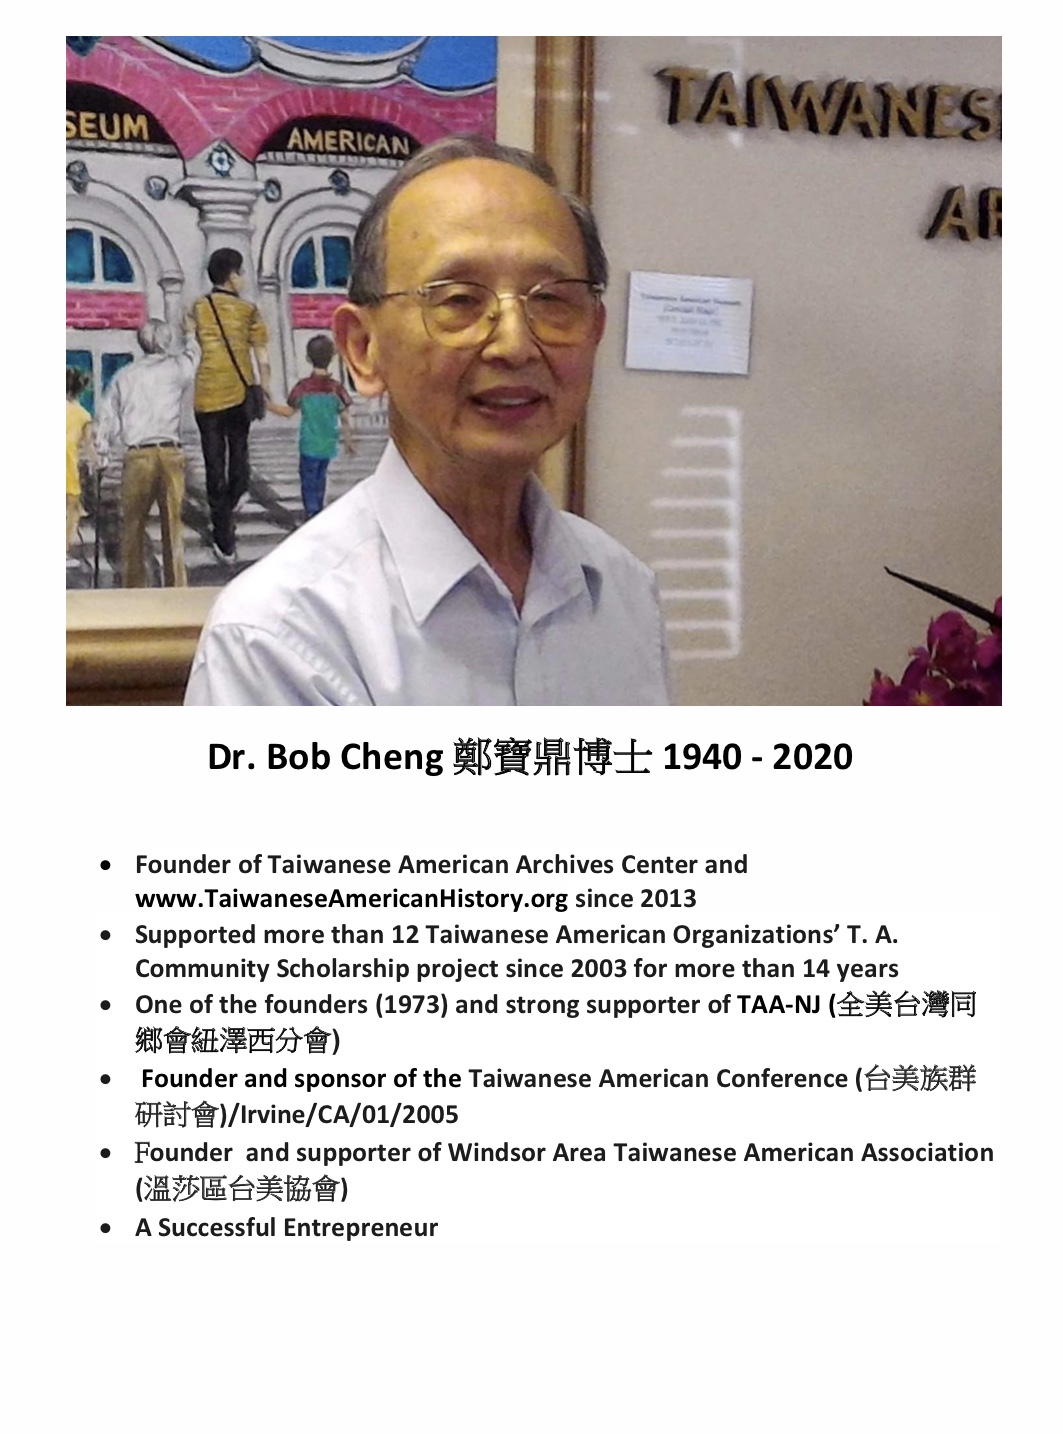 300. Dr. Bob Cheng 鄭寶鼎博士 1940-2020